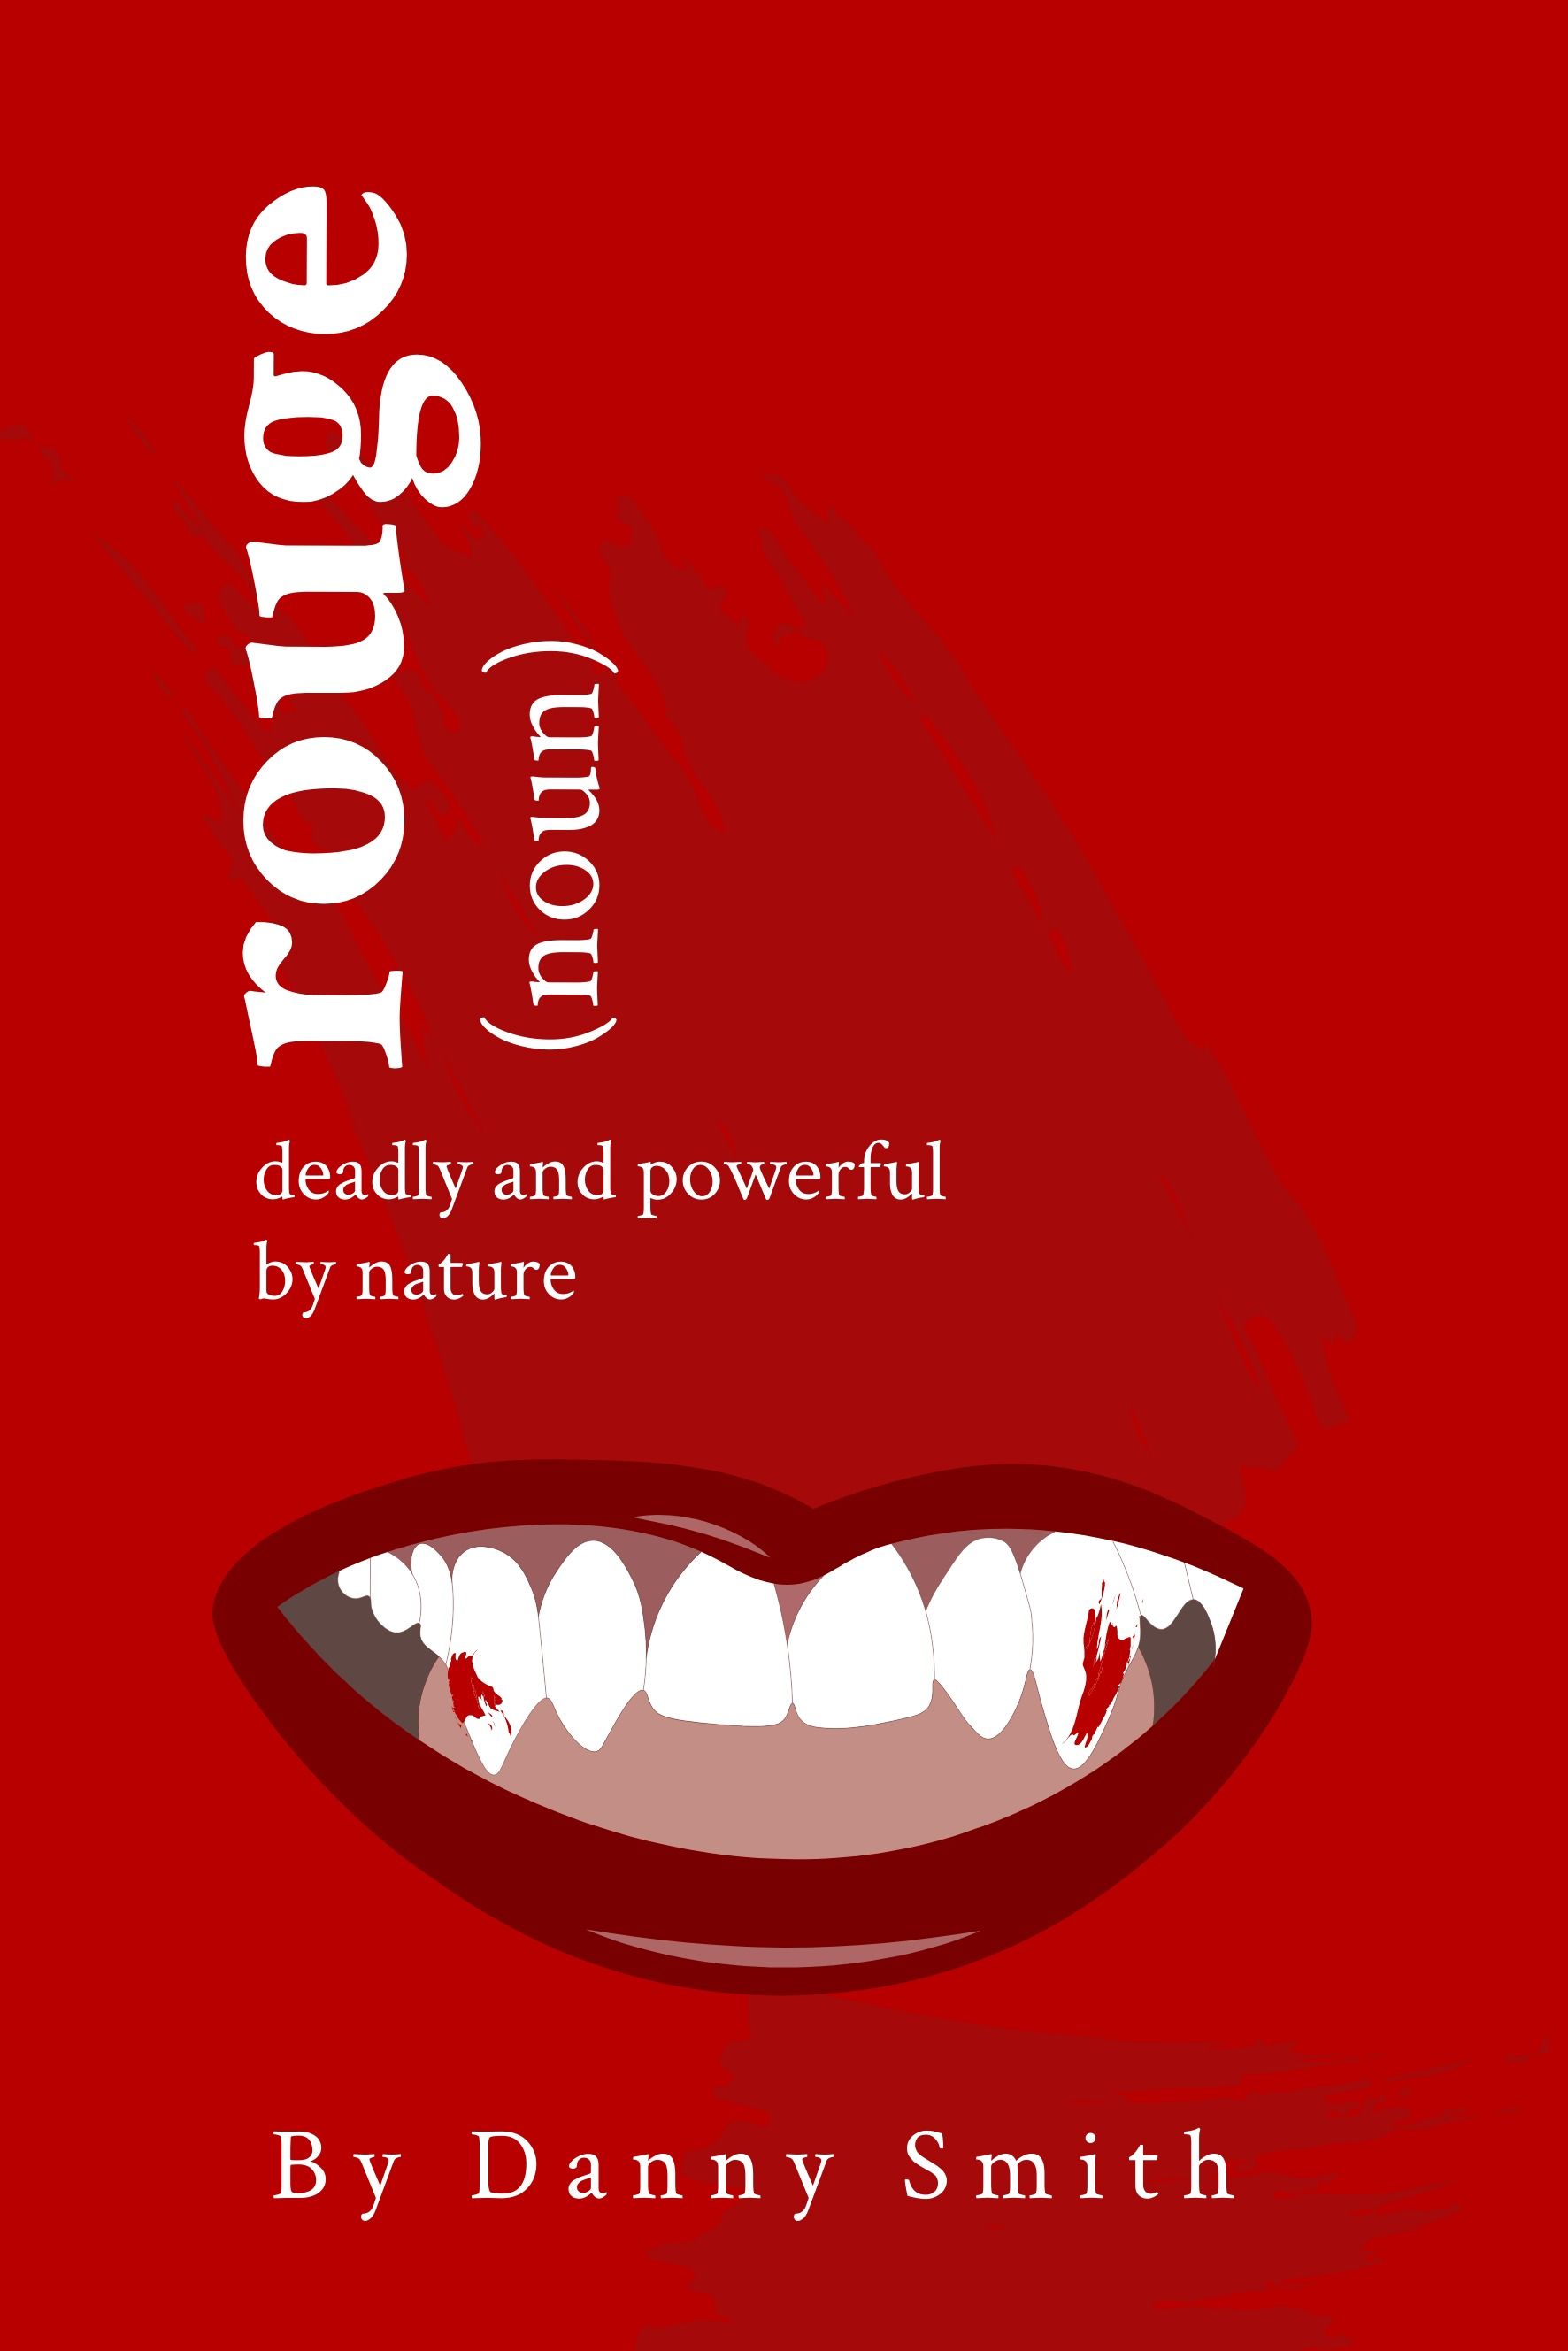 Capa do Livro "Shades of Red" com 'Rouge' pelo autor fictício 'Danny Smith' usando fonte serifada e ícone de lábios - O guia completo para fontes: 5 tipos essenciais de fontes em tipografia - Imagem